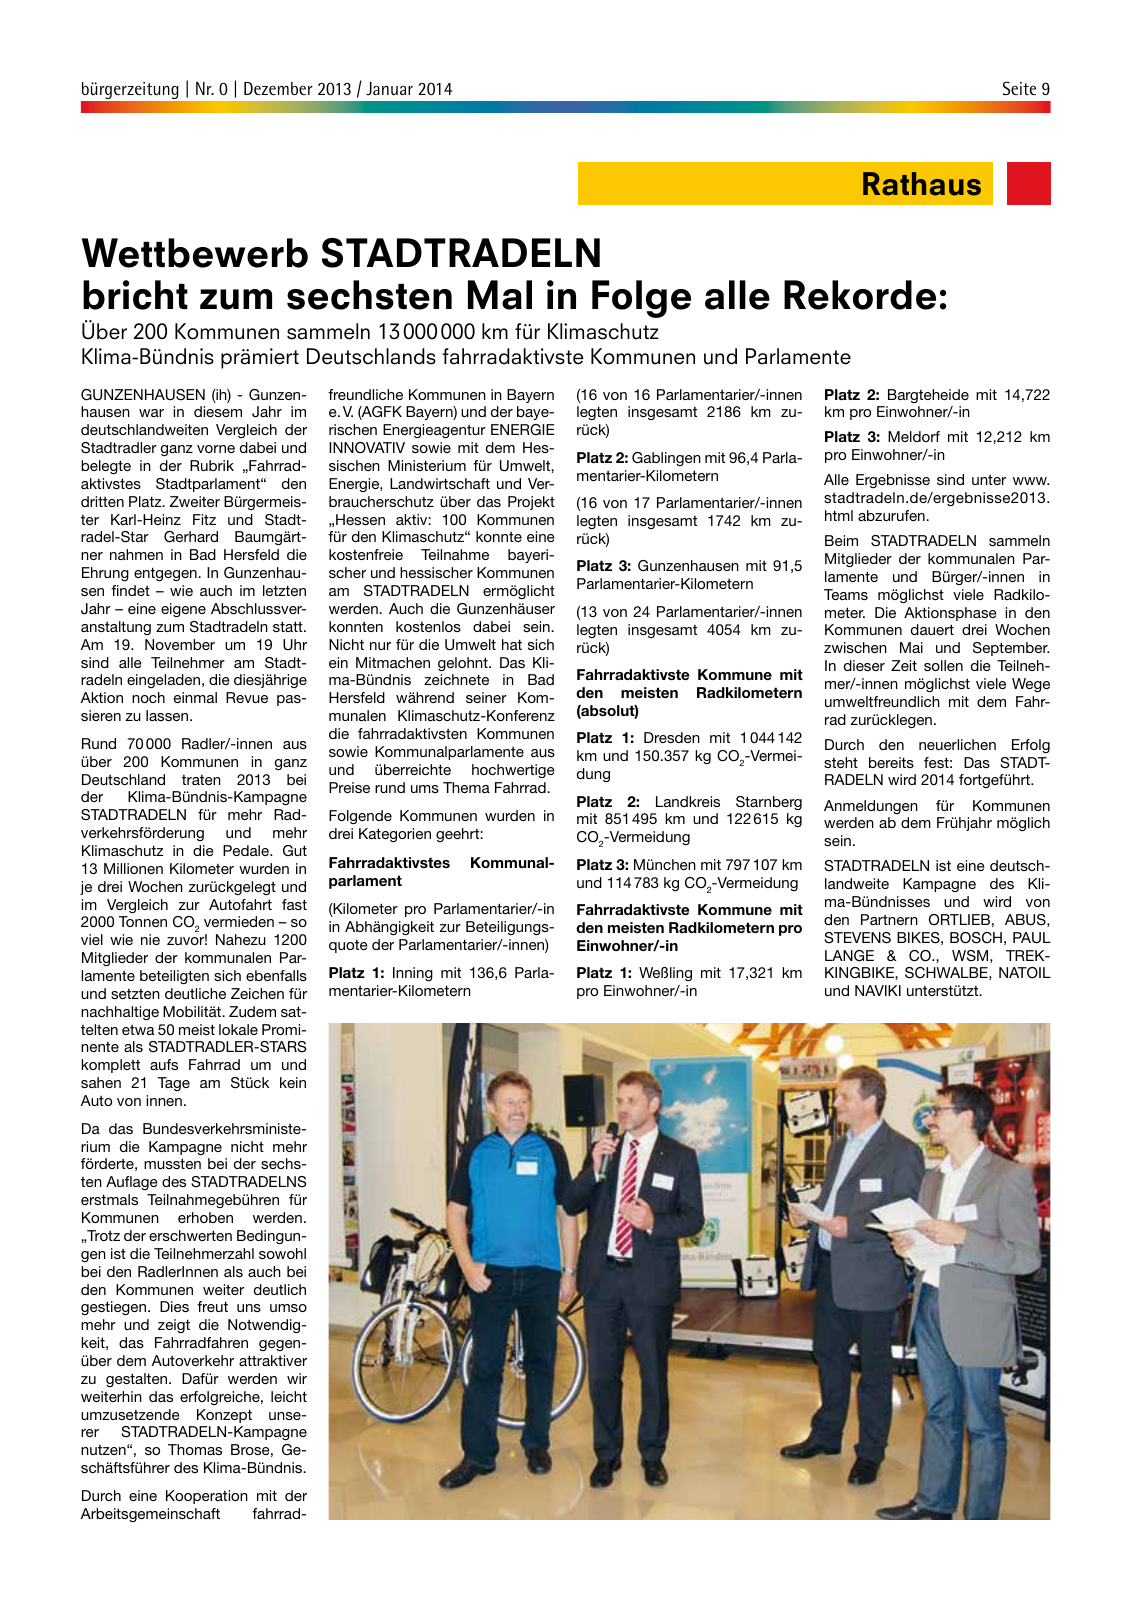 Vorschau bürgerzeitung Nr. 0 Dezember 2013 Januar 2014 Seite 9